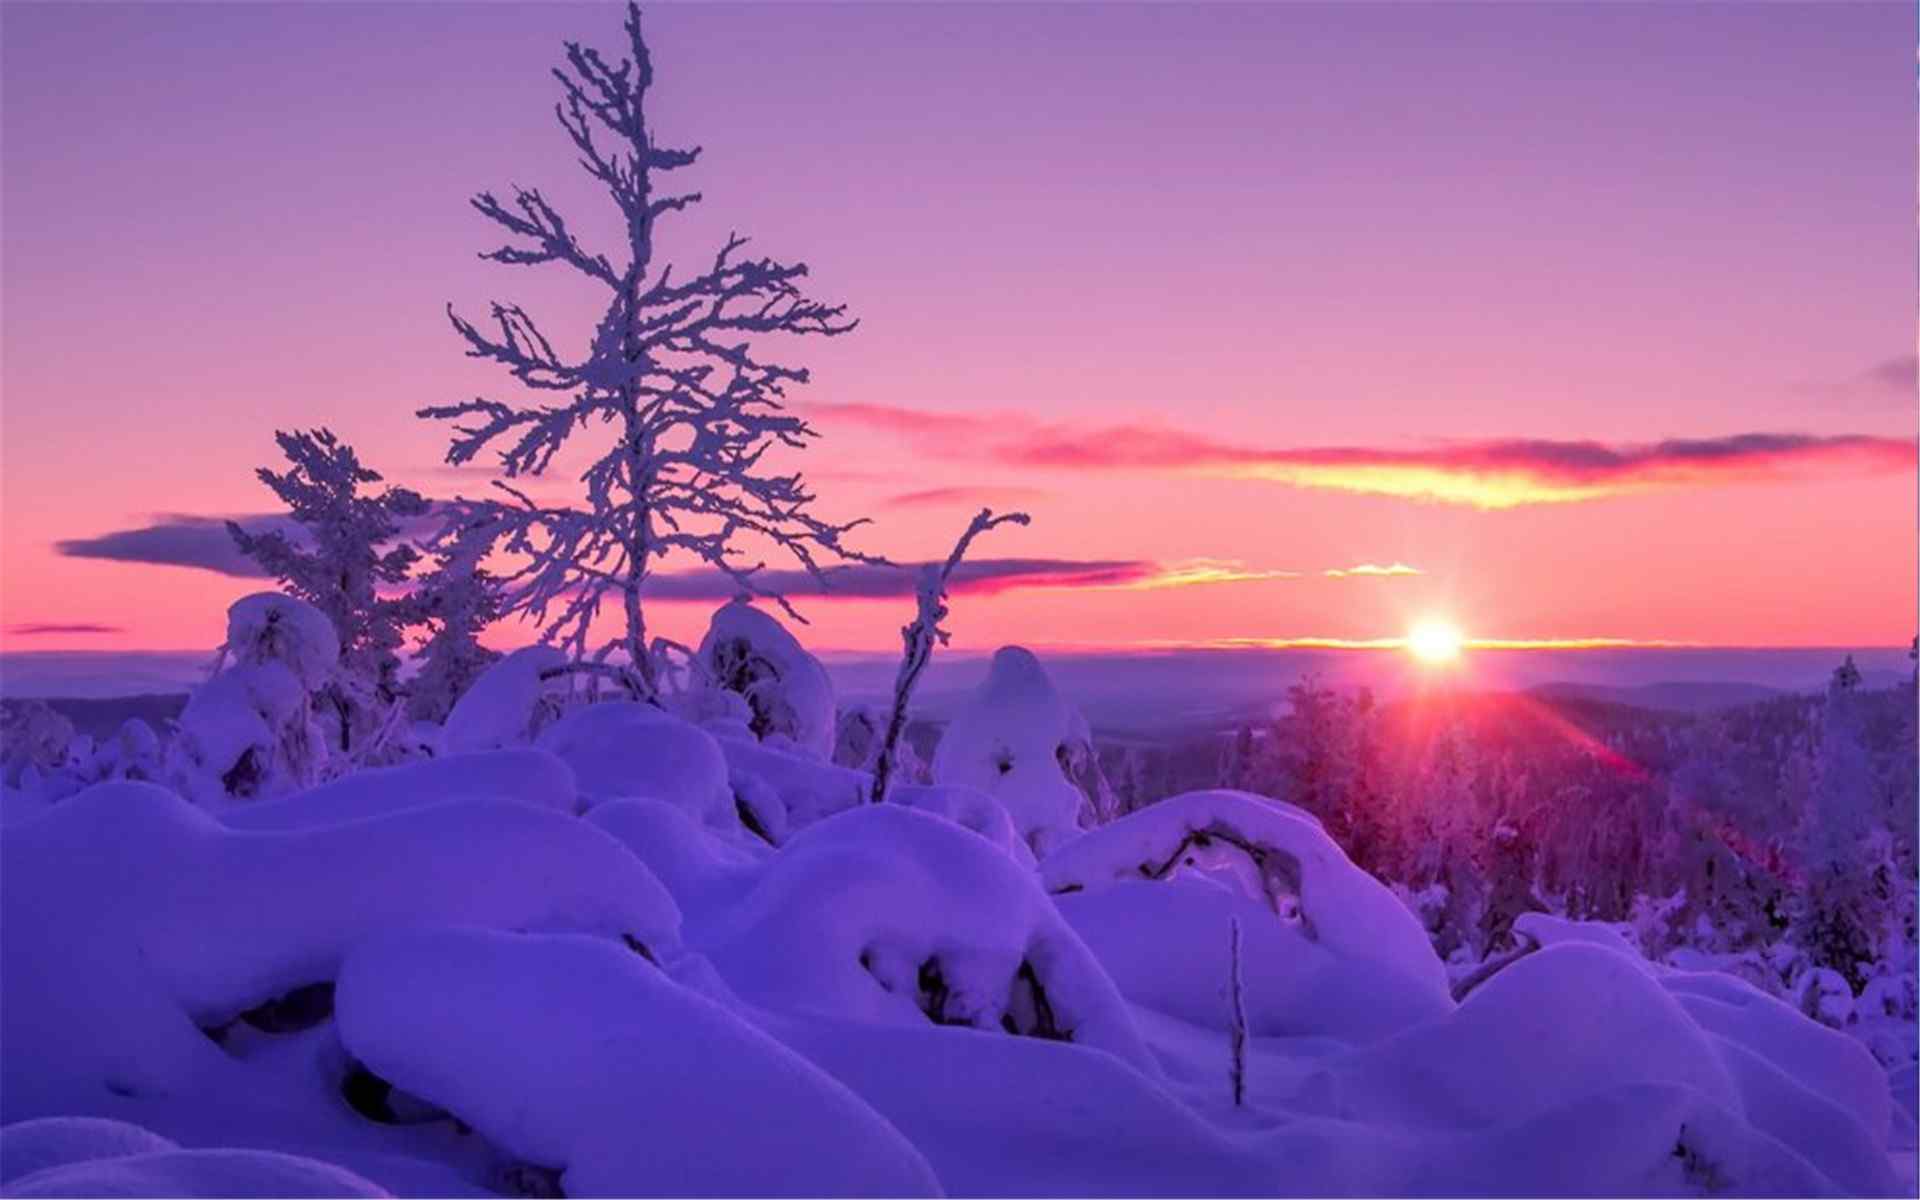 唯美的冬日夕阳风景图片高清壁纸